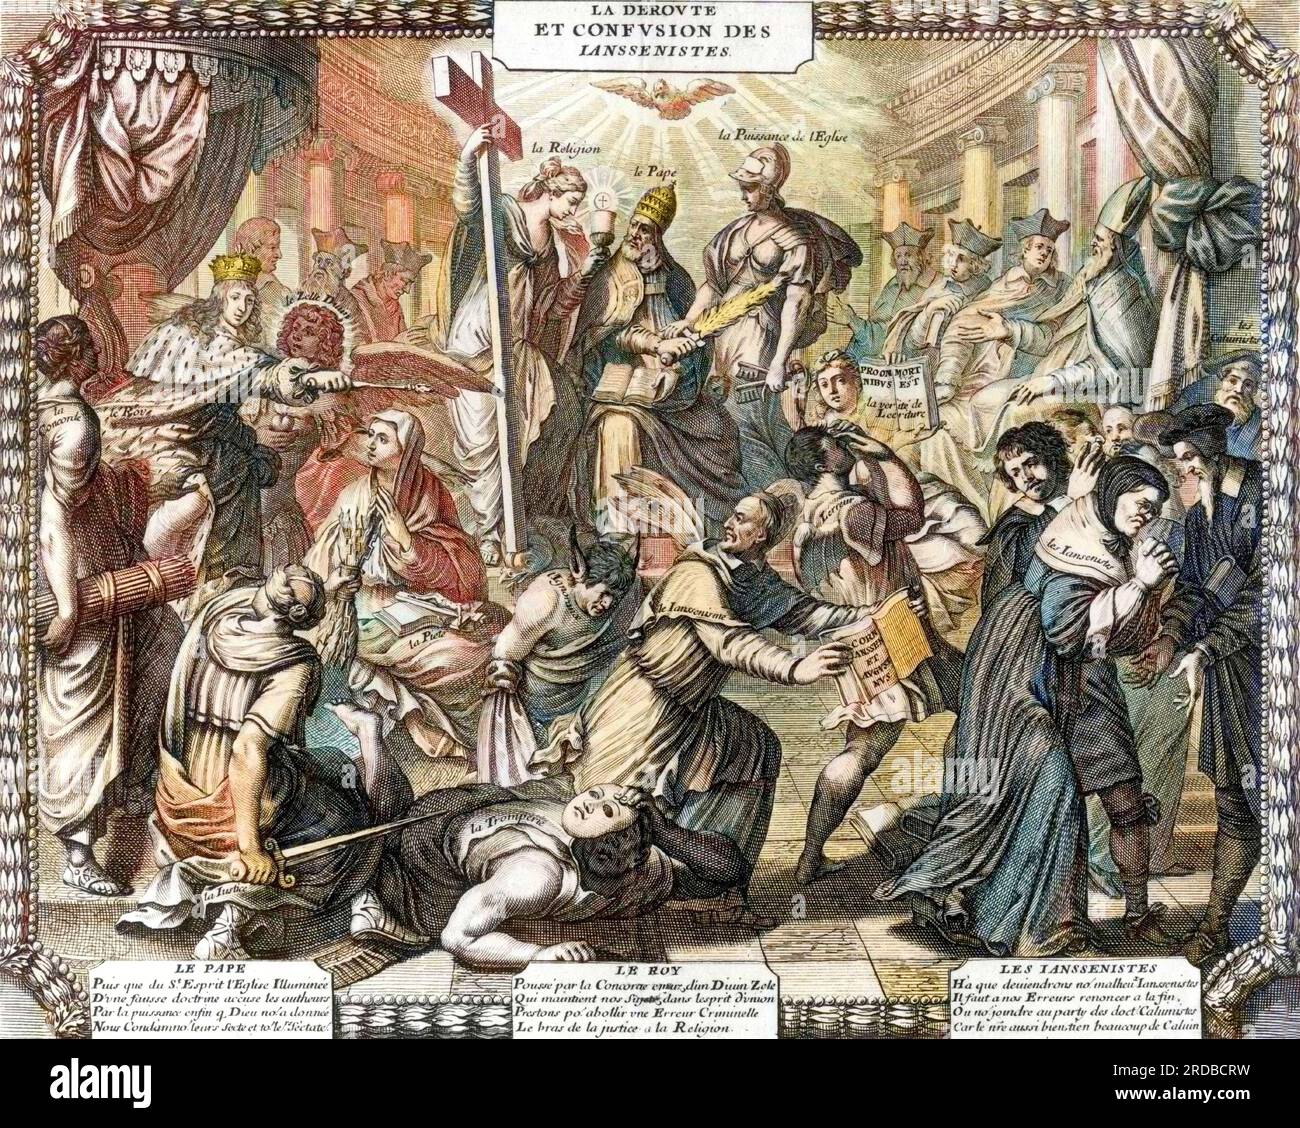 'La déroute et confusion des jansénistes' - almanach satirique publié par les Jésuites, 1653. - La déroute et la confusion des jansénistes Banque D'Images